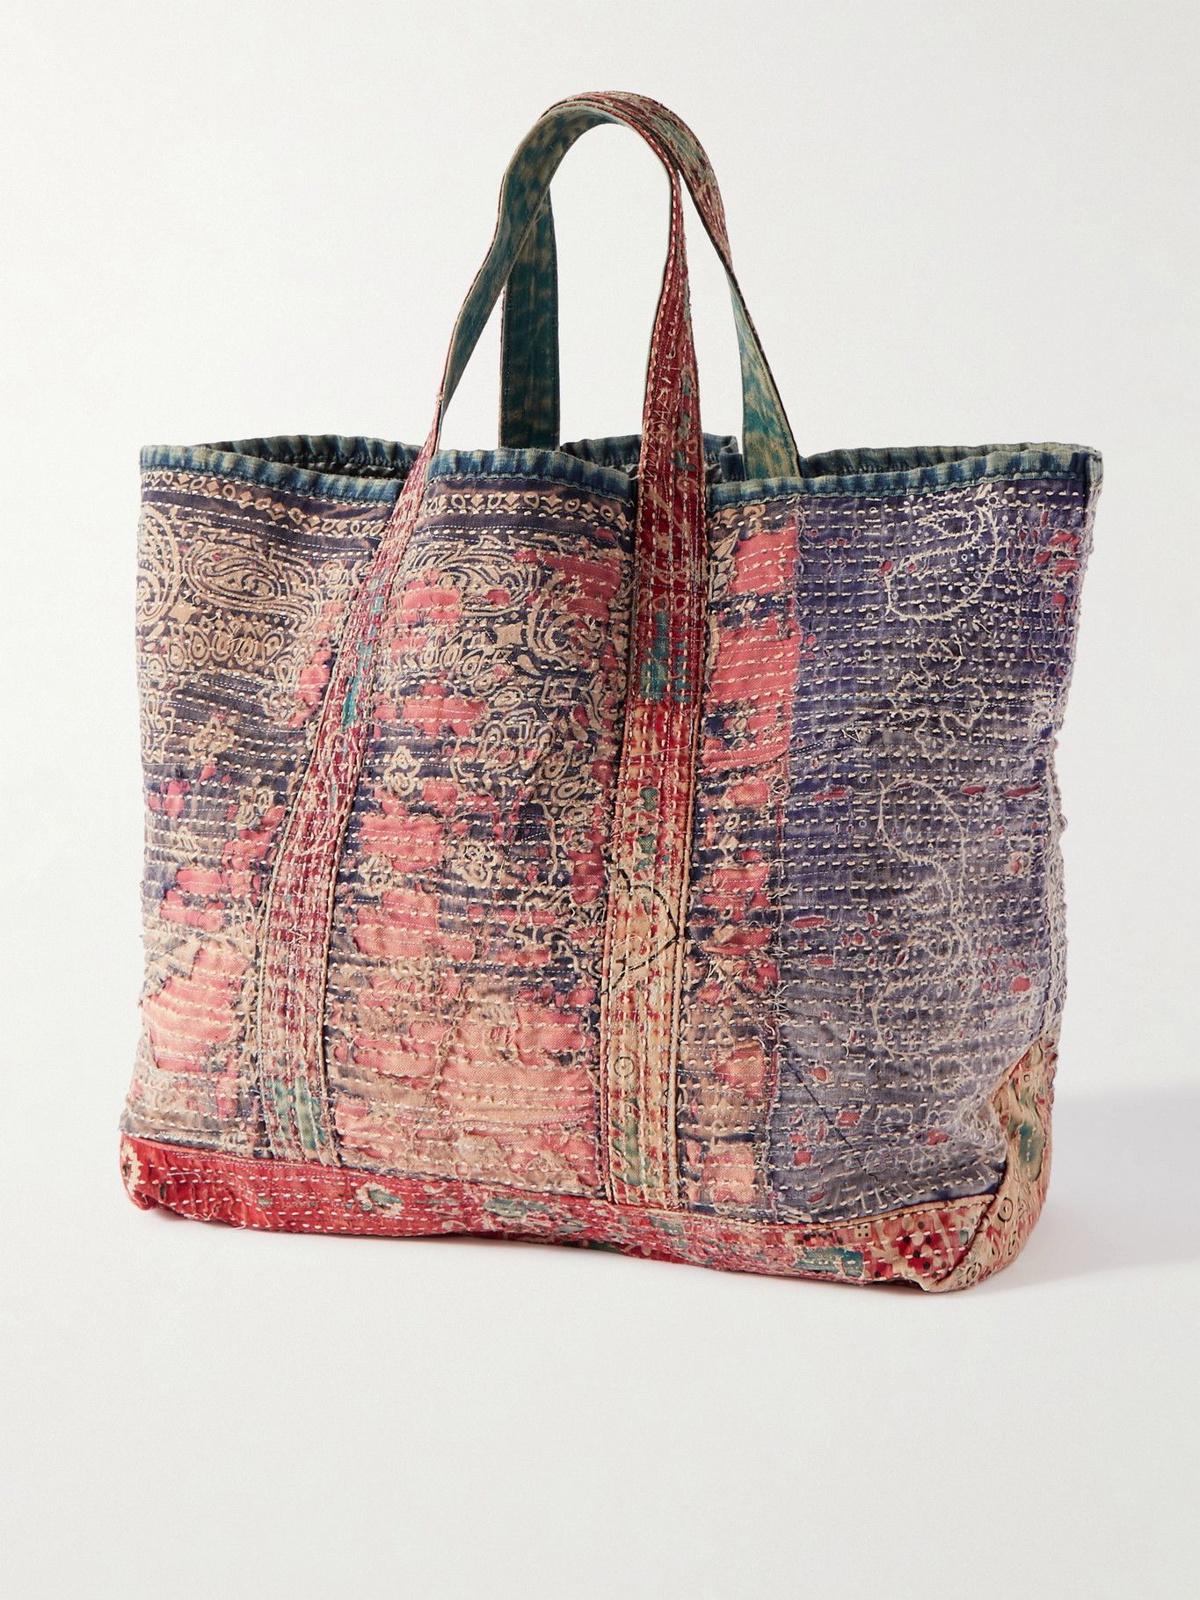 PROLETA-RE-ART - Patchwork Tote Bag